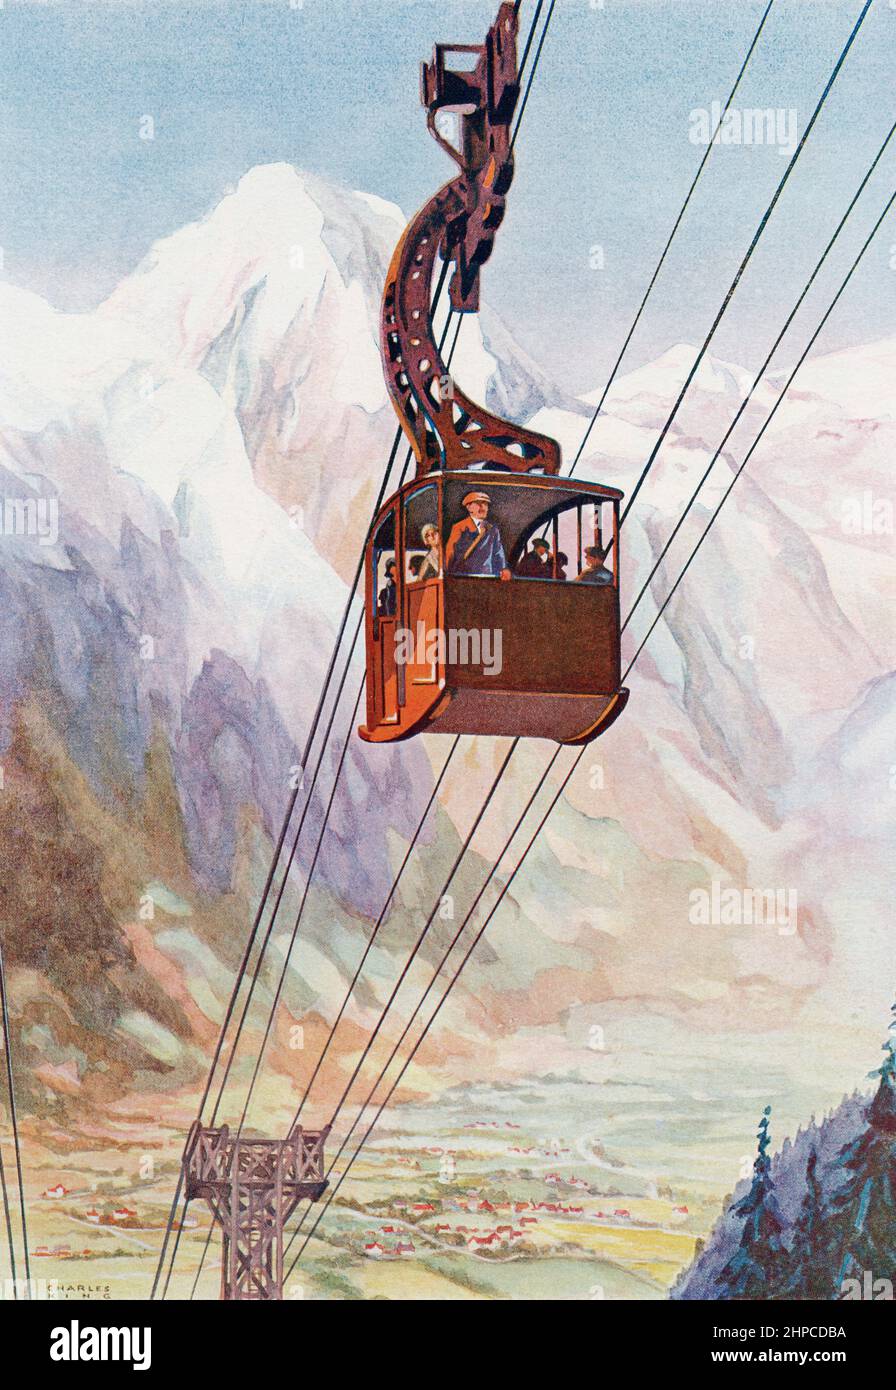 Un teleférico de montaña, Mont Blanc en el fondo. Del libro de la ciencia de la maravilla, publicado 1930. Foto de stock